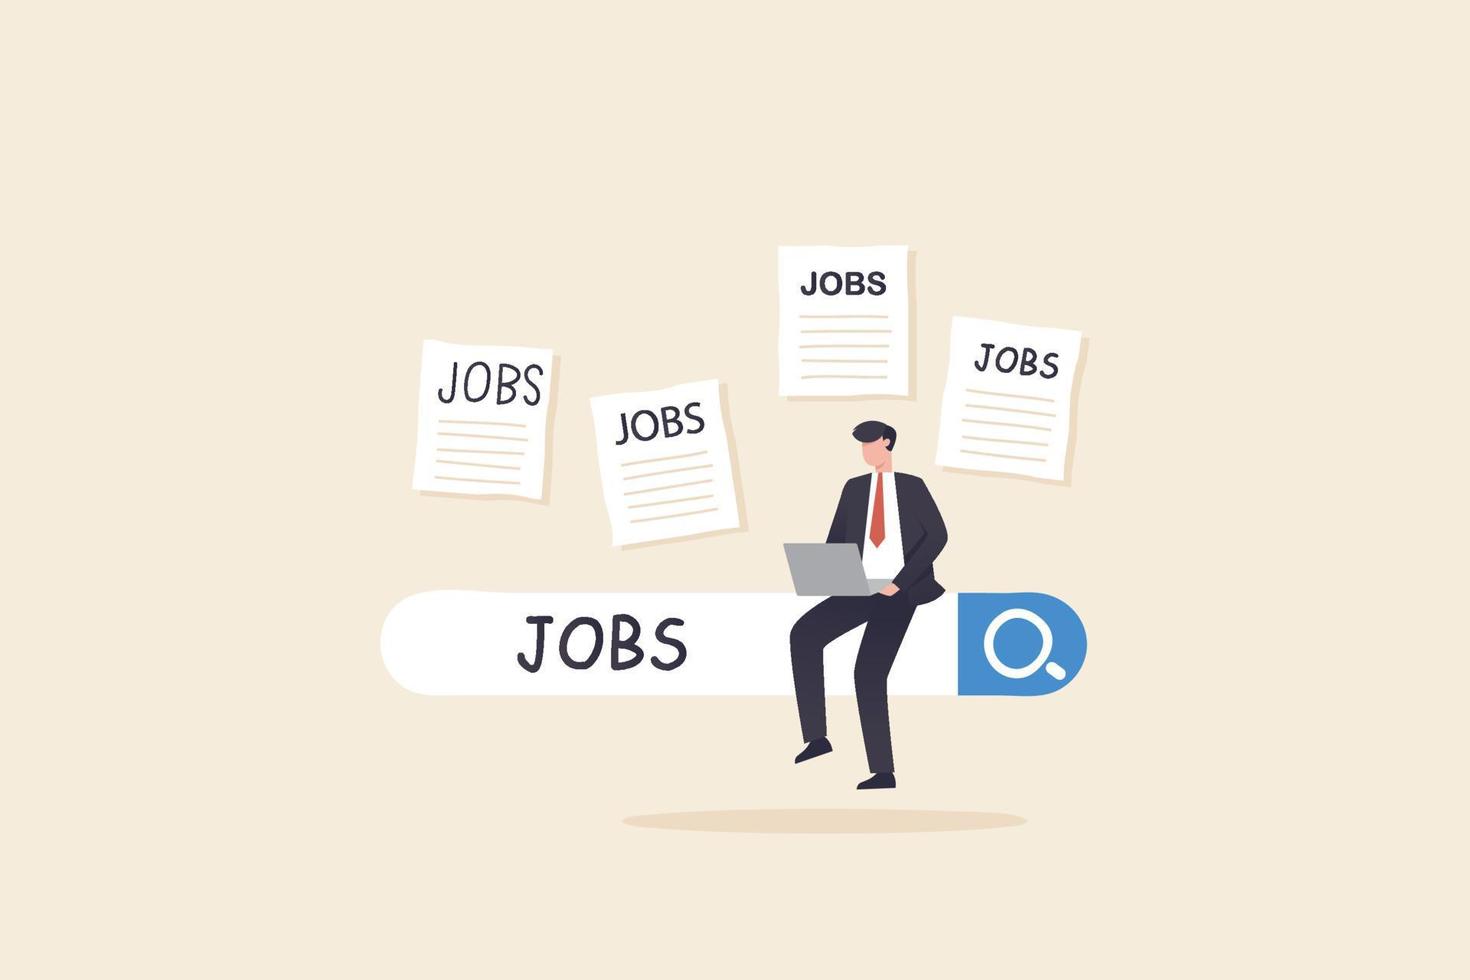 söka nytt jobb. anställning, karriär eller jobbsökning, hitta tillfälle, söka lediga platser eller arbetspositionskoncept. vektor